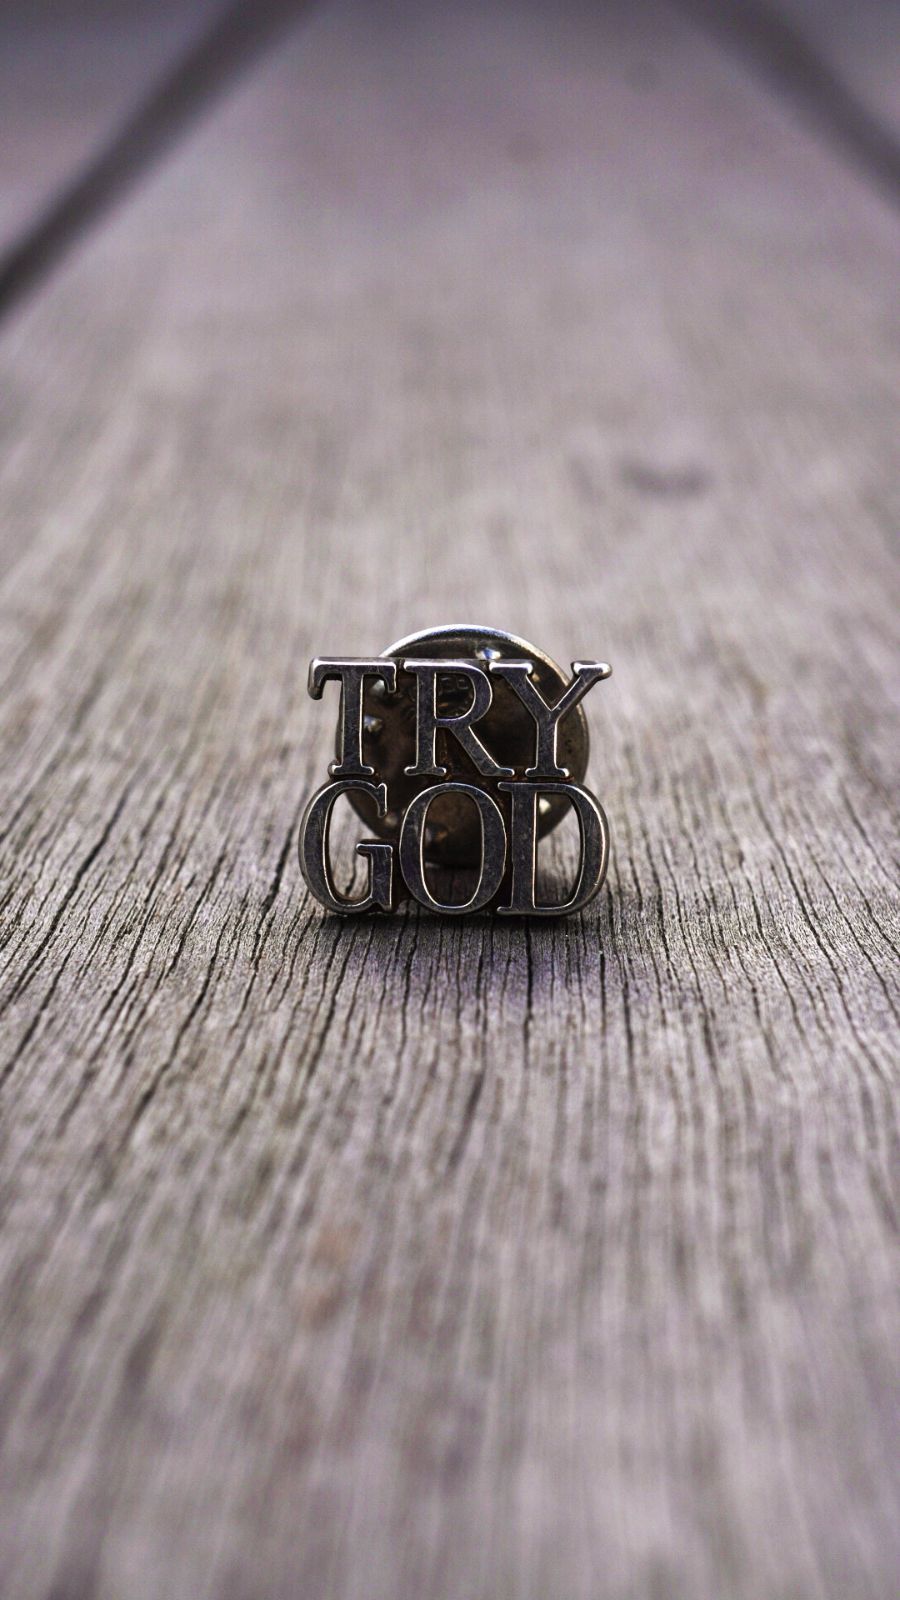 Tiffany & Co. ティファニー ピンバッジ ピンズ TRYGOD - ネックレス